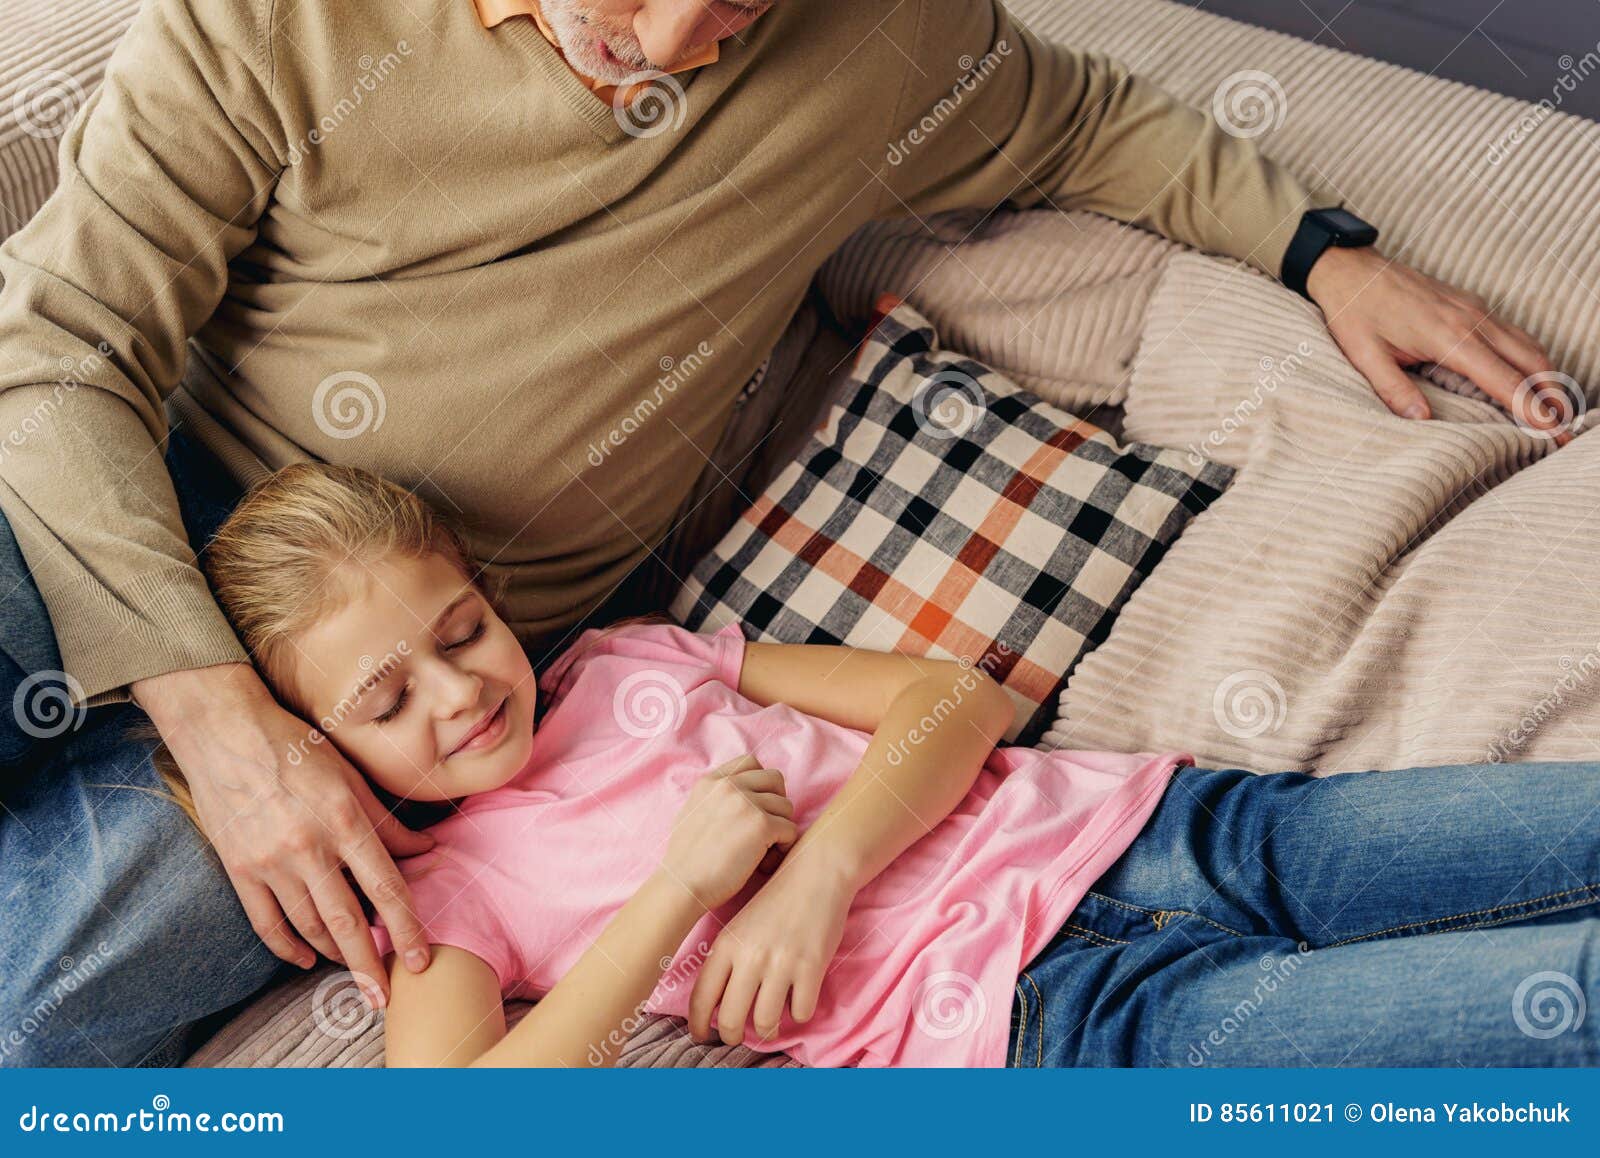 Father sleep daughter. Внучка на коленях у дедушки. Дед и внучка на диване. Дедушка и внучка на диване фото.